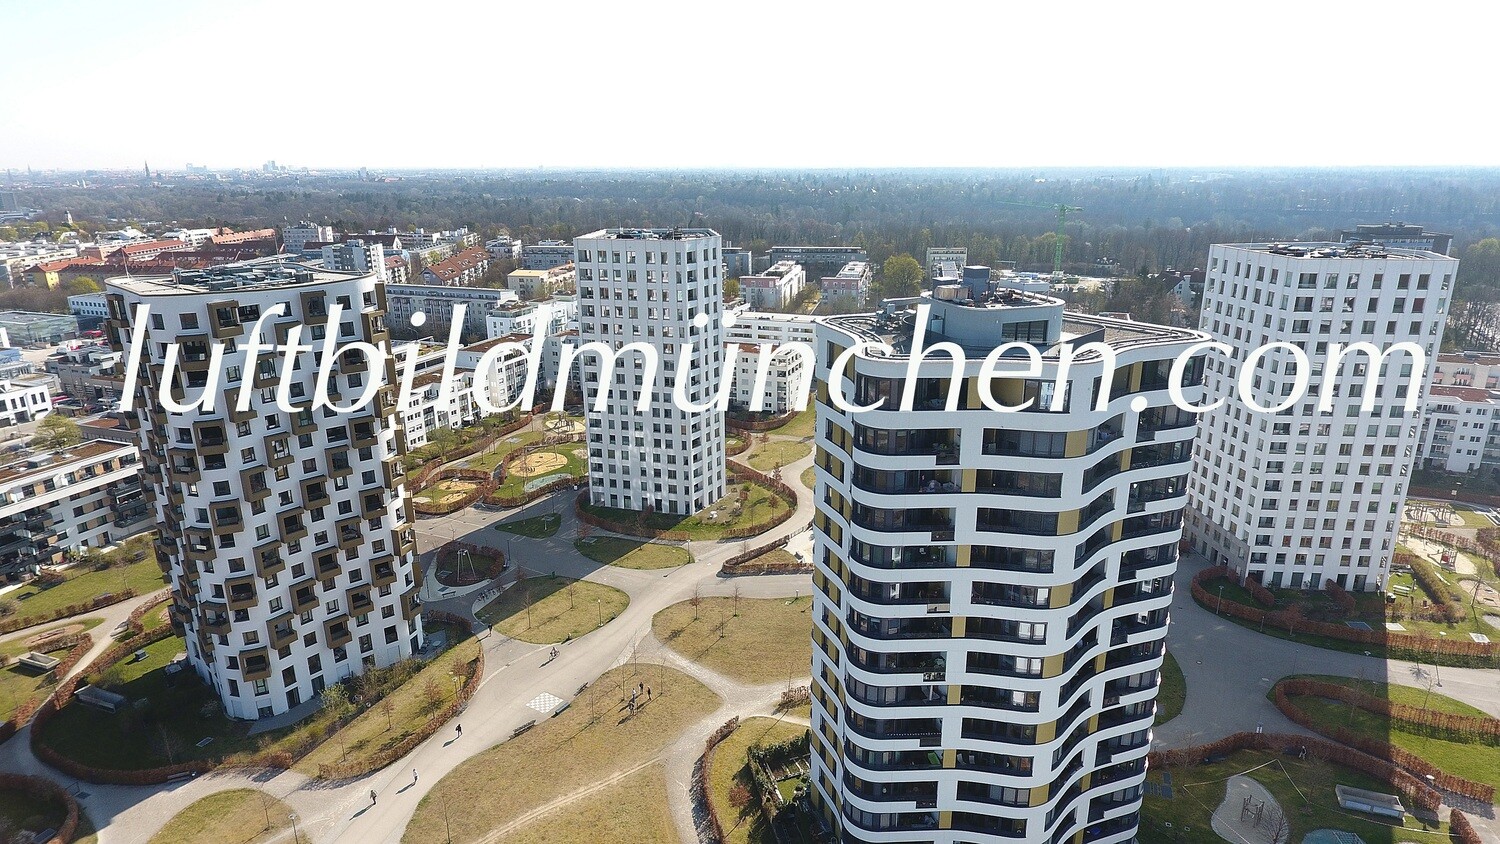 Luftbildfoto, Luftaufnahme, Luftbild, Foto mit Drohne, München, Foto von oben, Wohngebiet, Hochhaus, Carola Neher Strasse, Neubaugebiet, Obersendling,